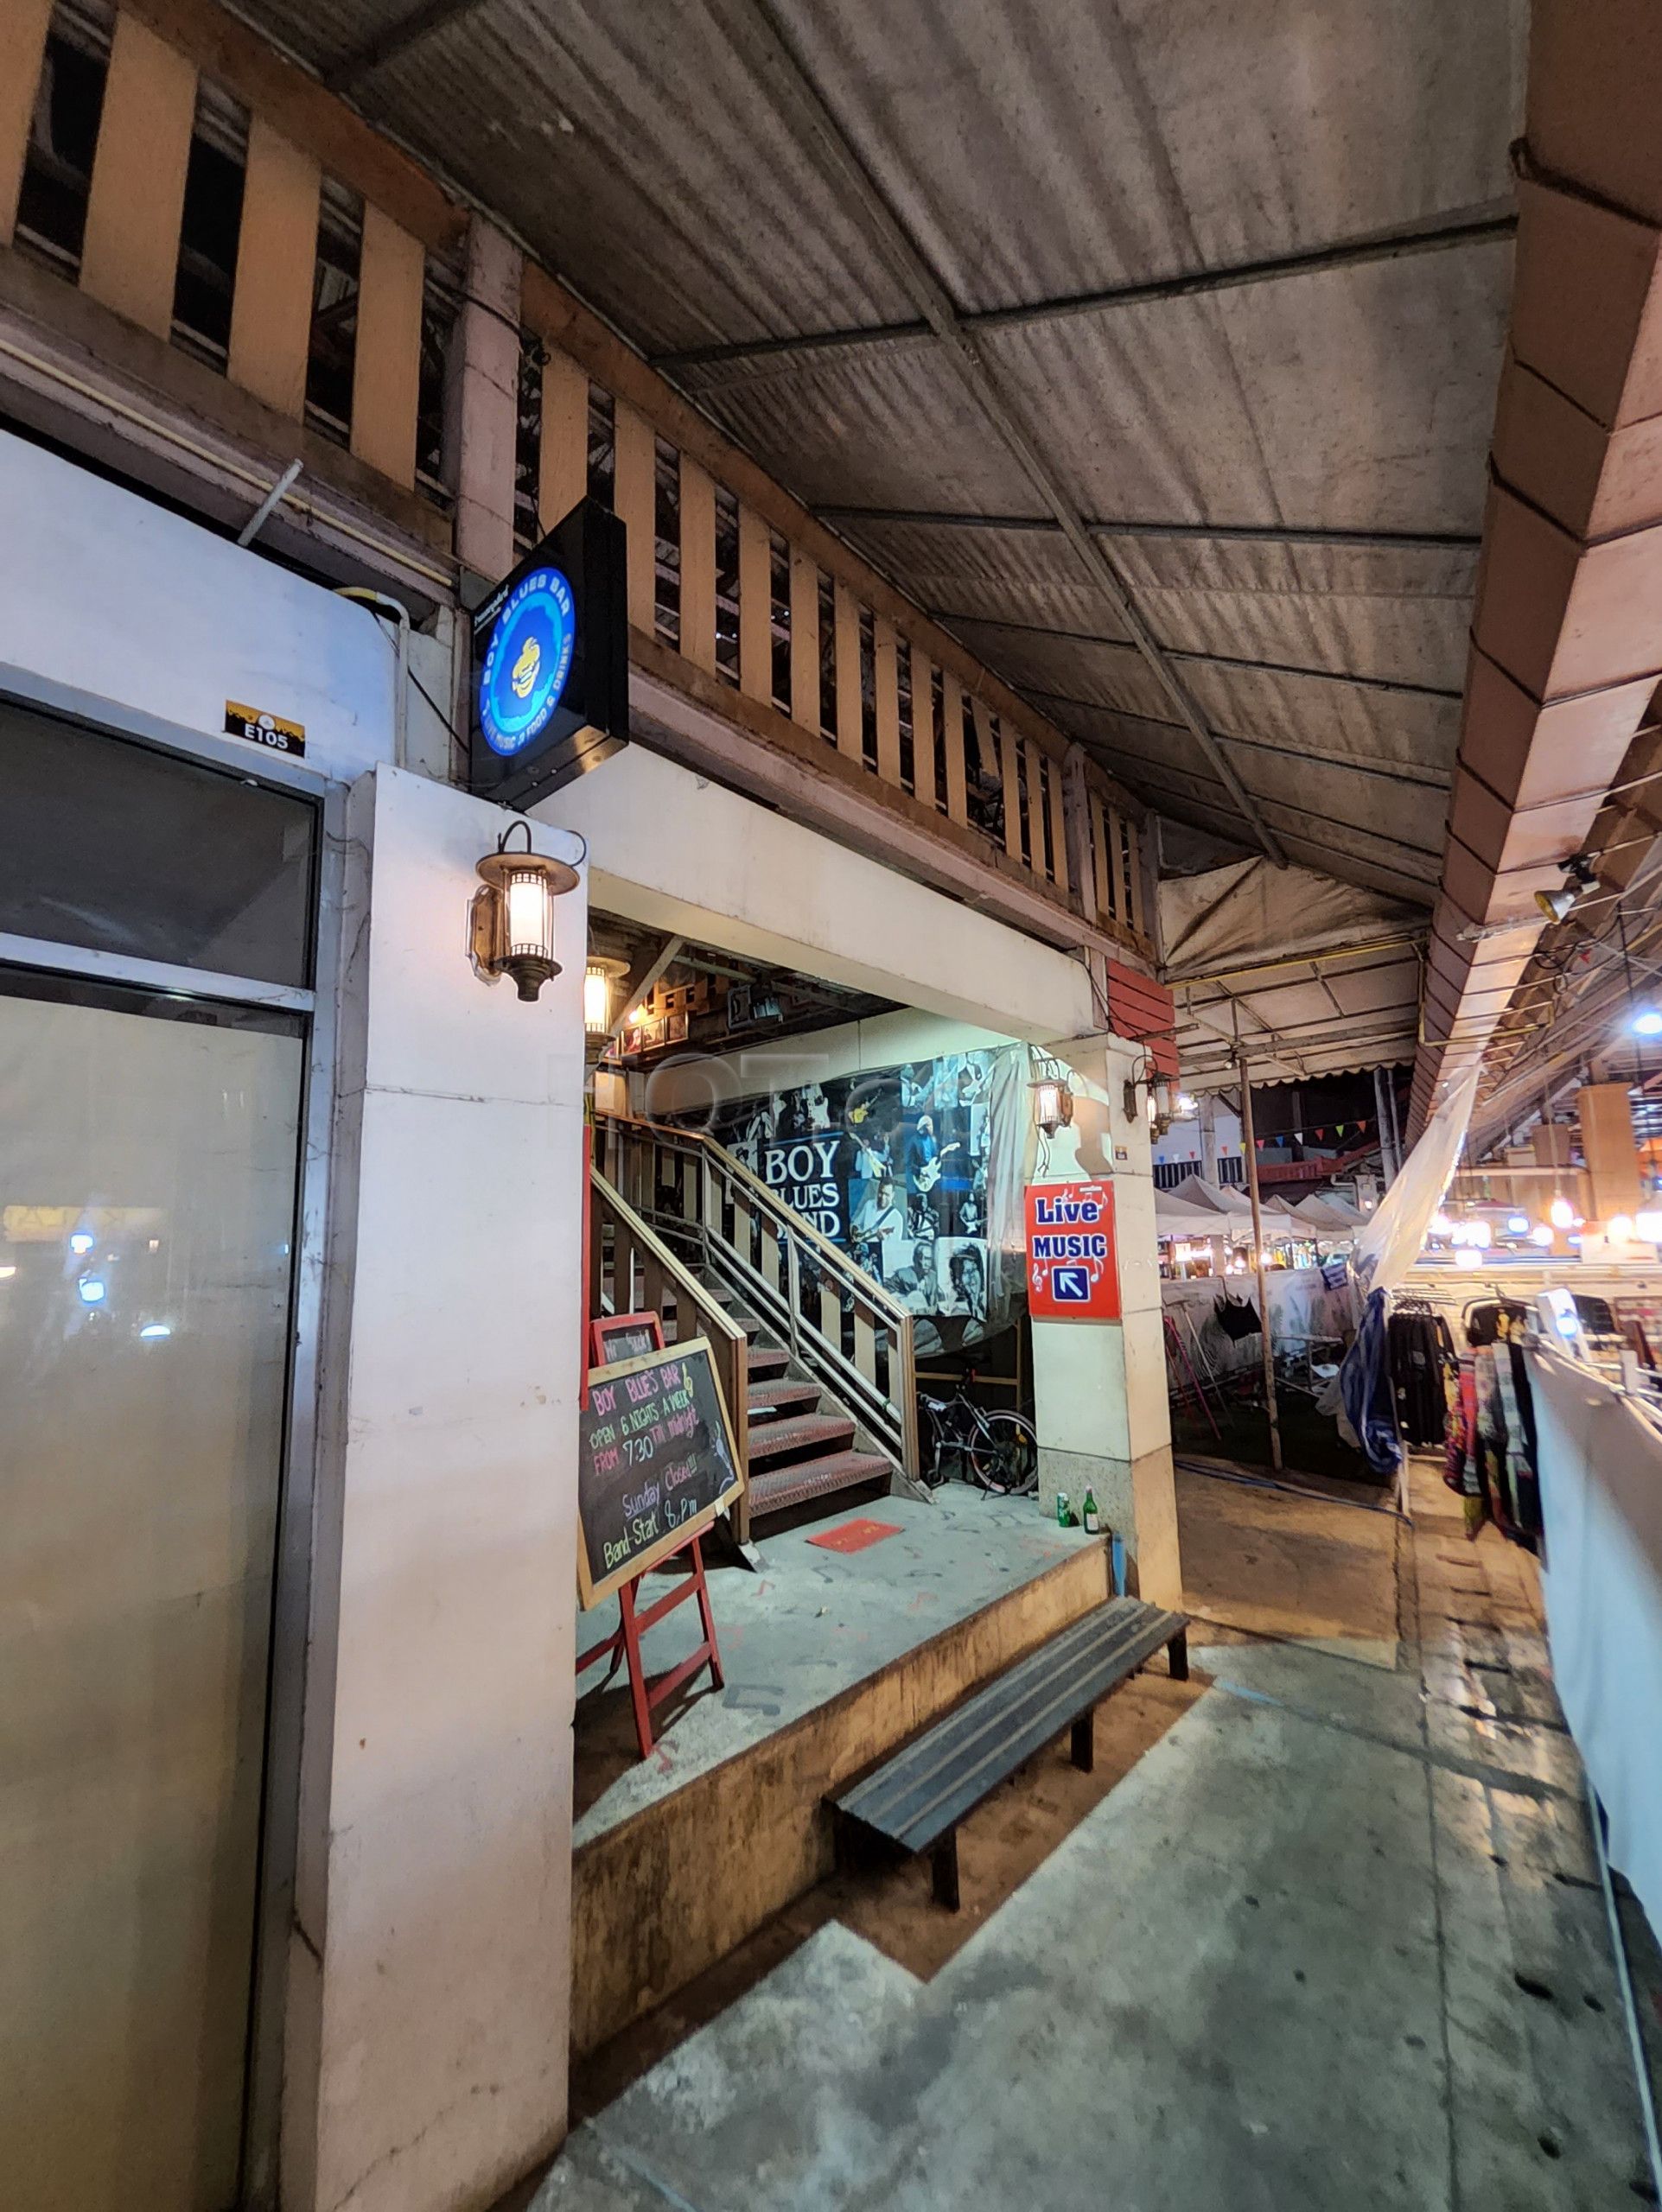 Chiang Mai, Thailand Boy Blues Bar